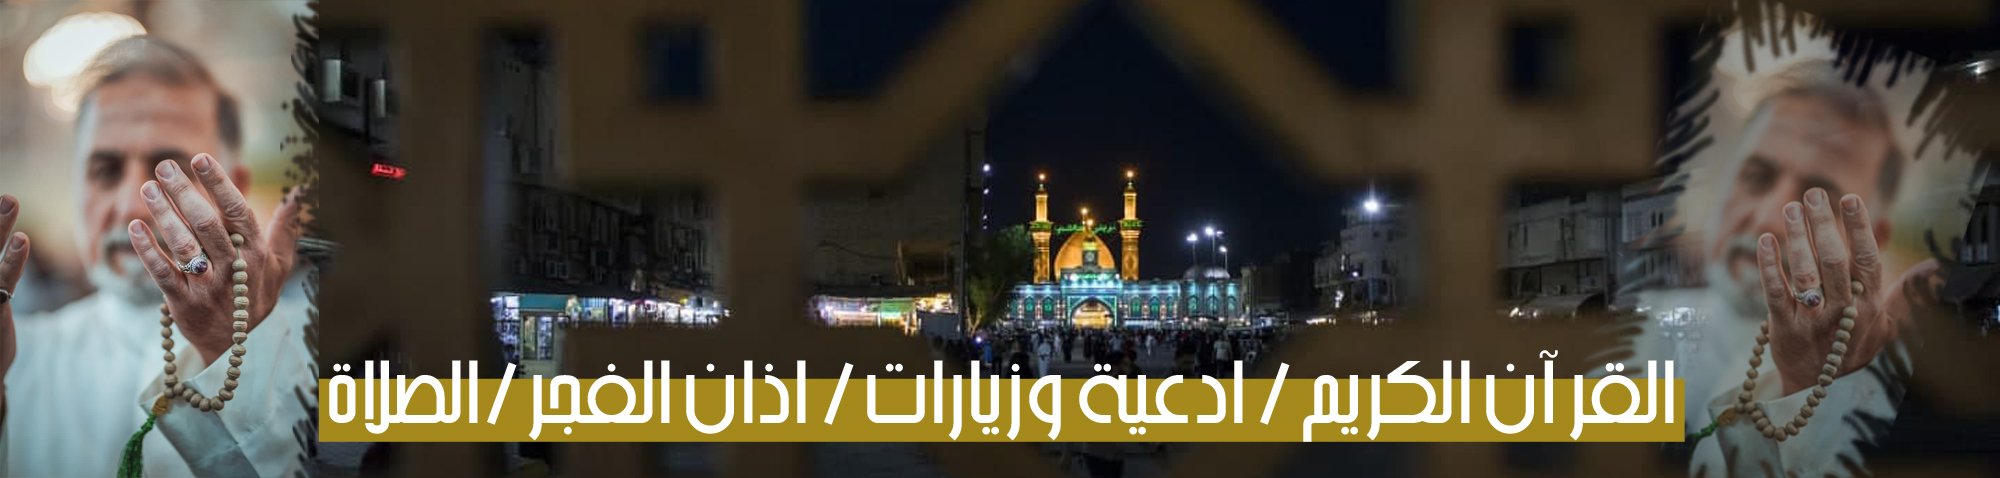 القران الكريم اذان الفجر_1664892426.jpg